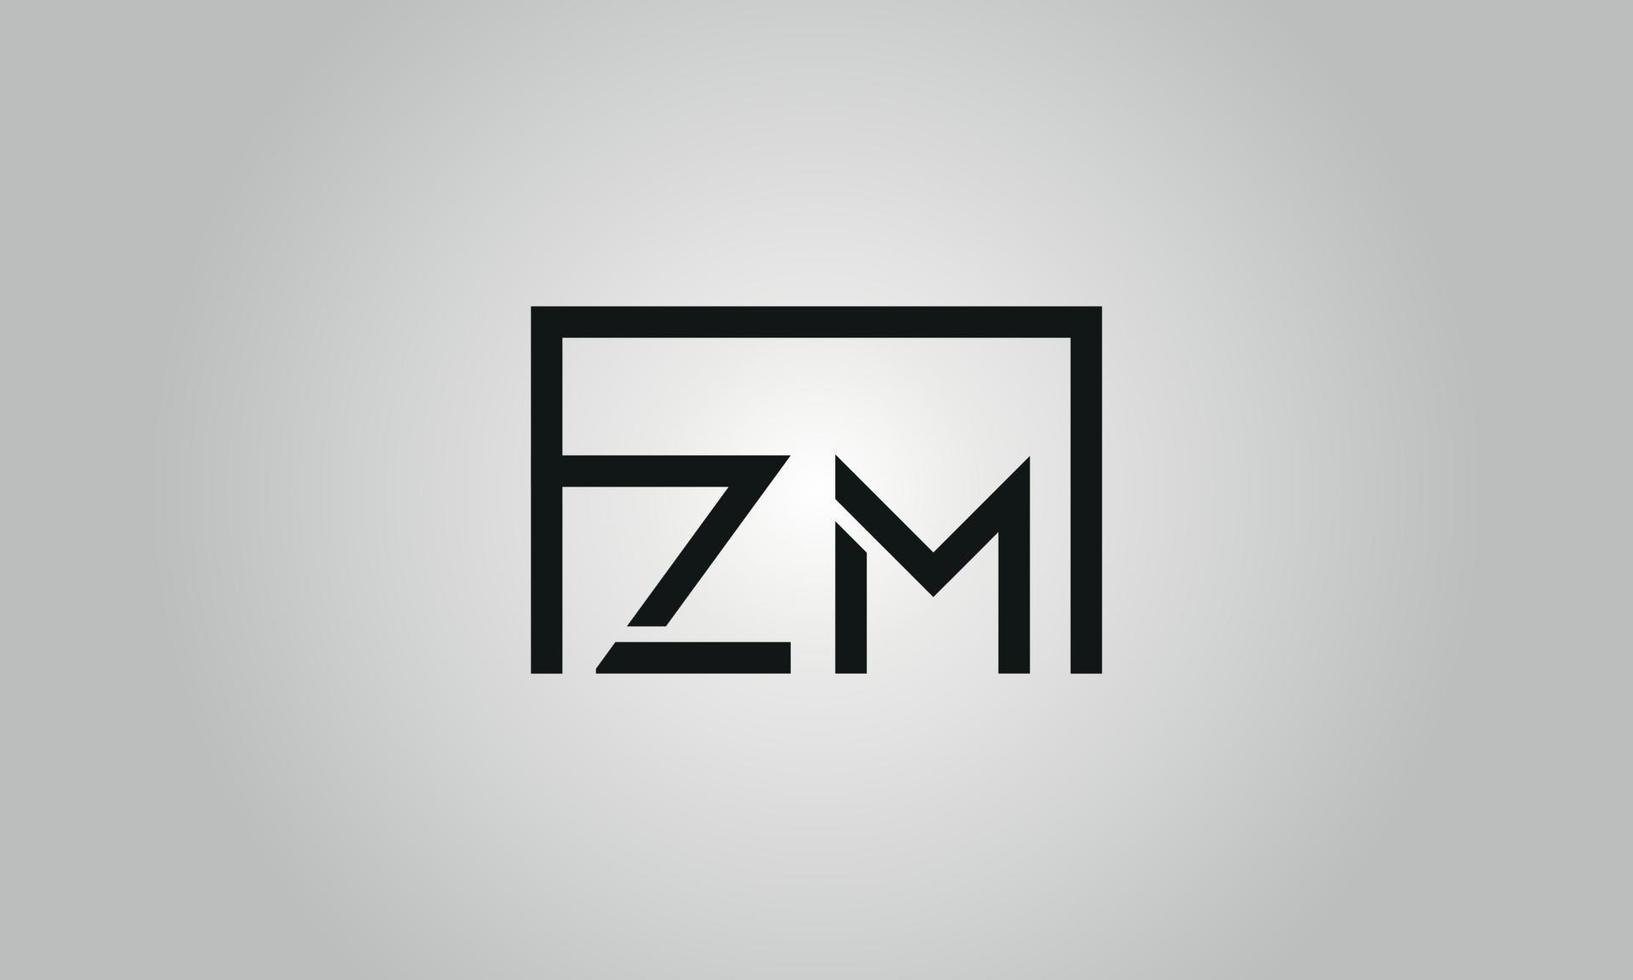 Buchstabe zm Logo-Design. zm-Logo mit quadratischer Form in schwarzen Farben Vektor kostenlose Vektorvorlage.